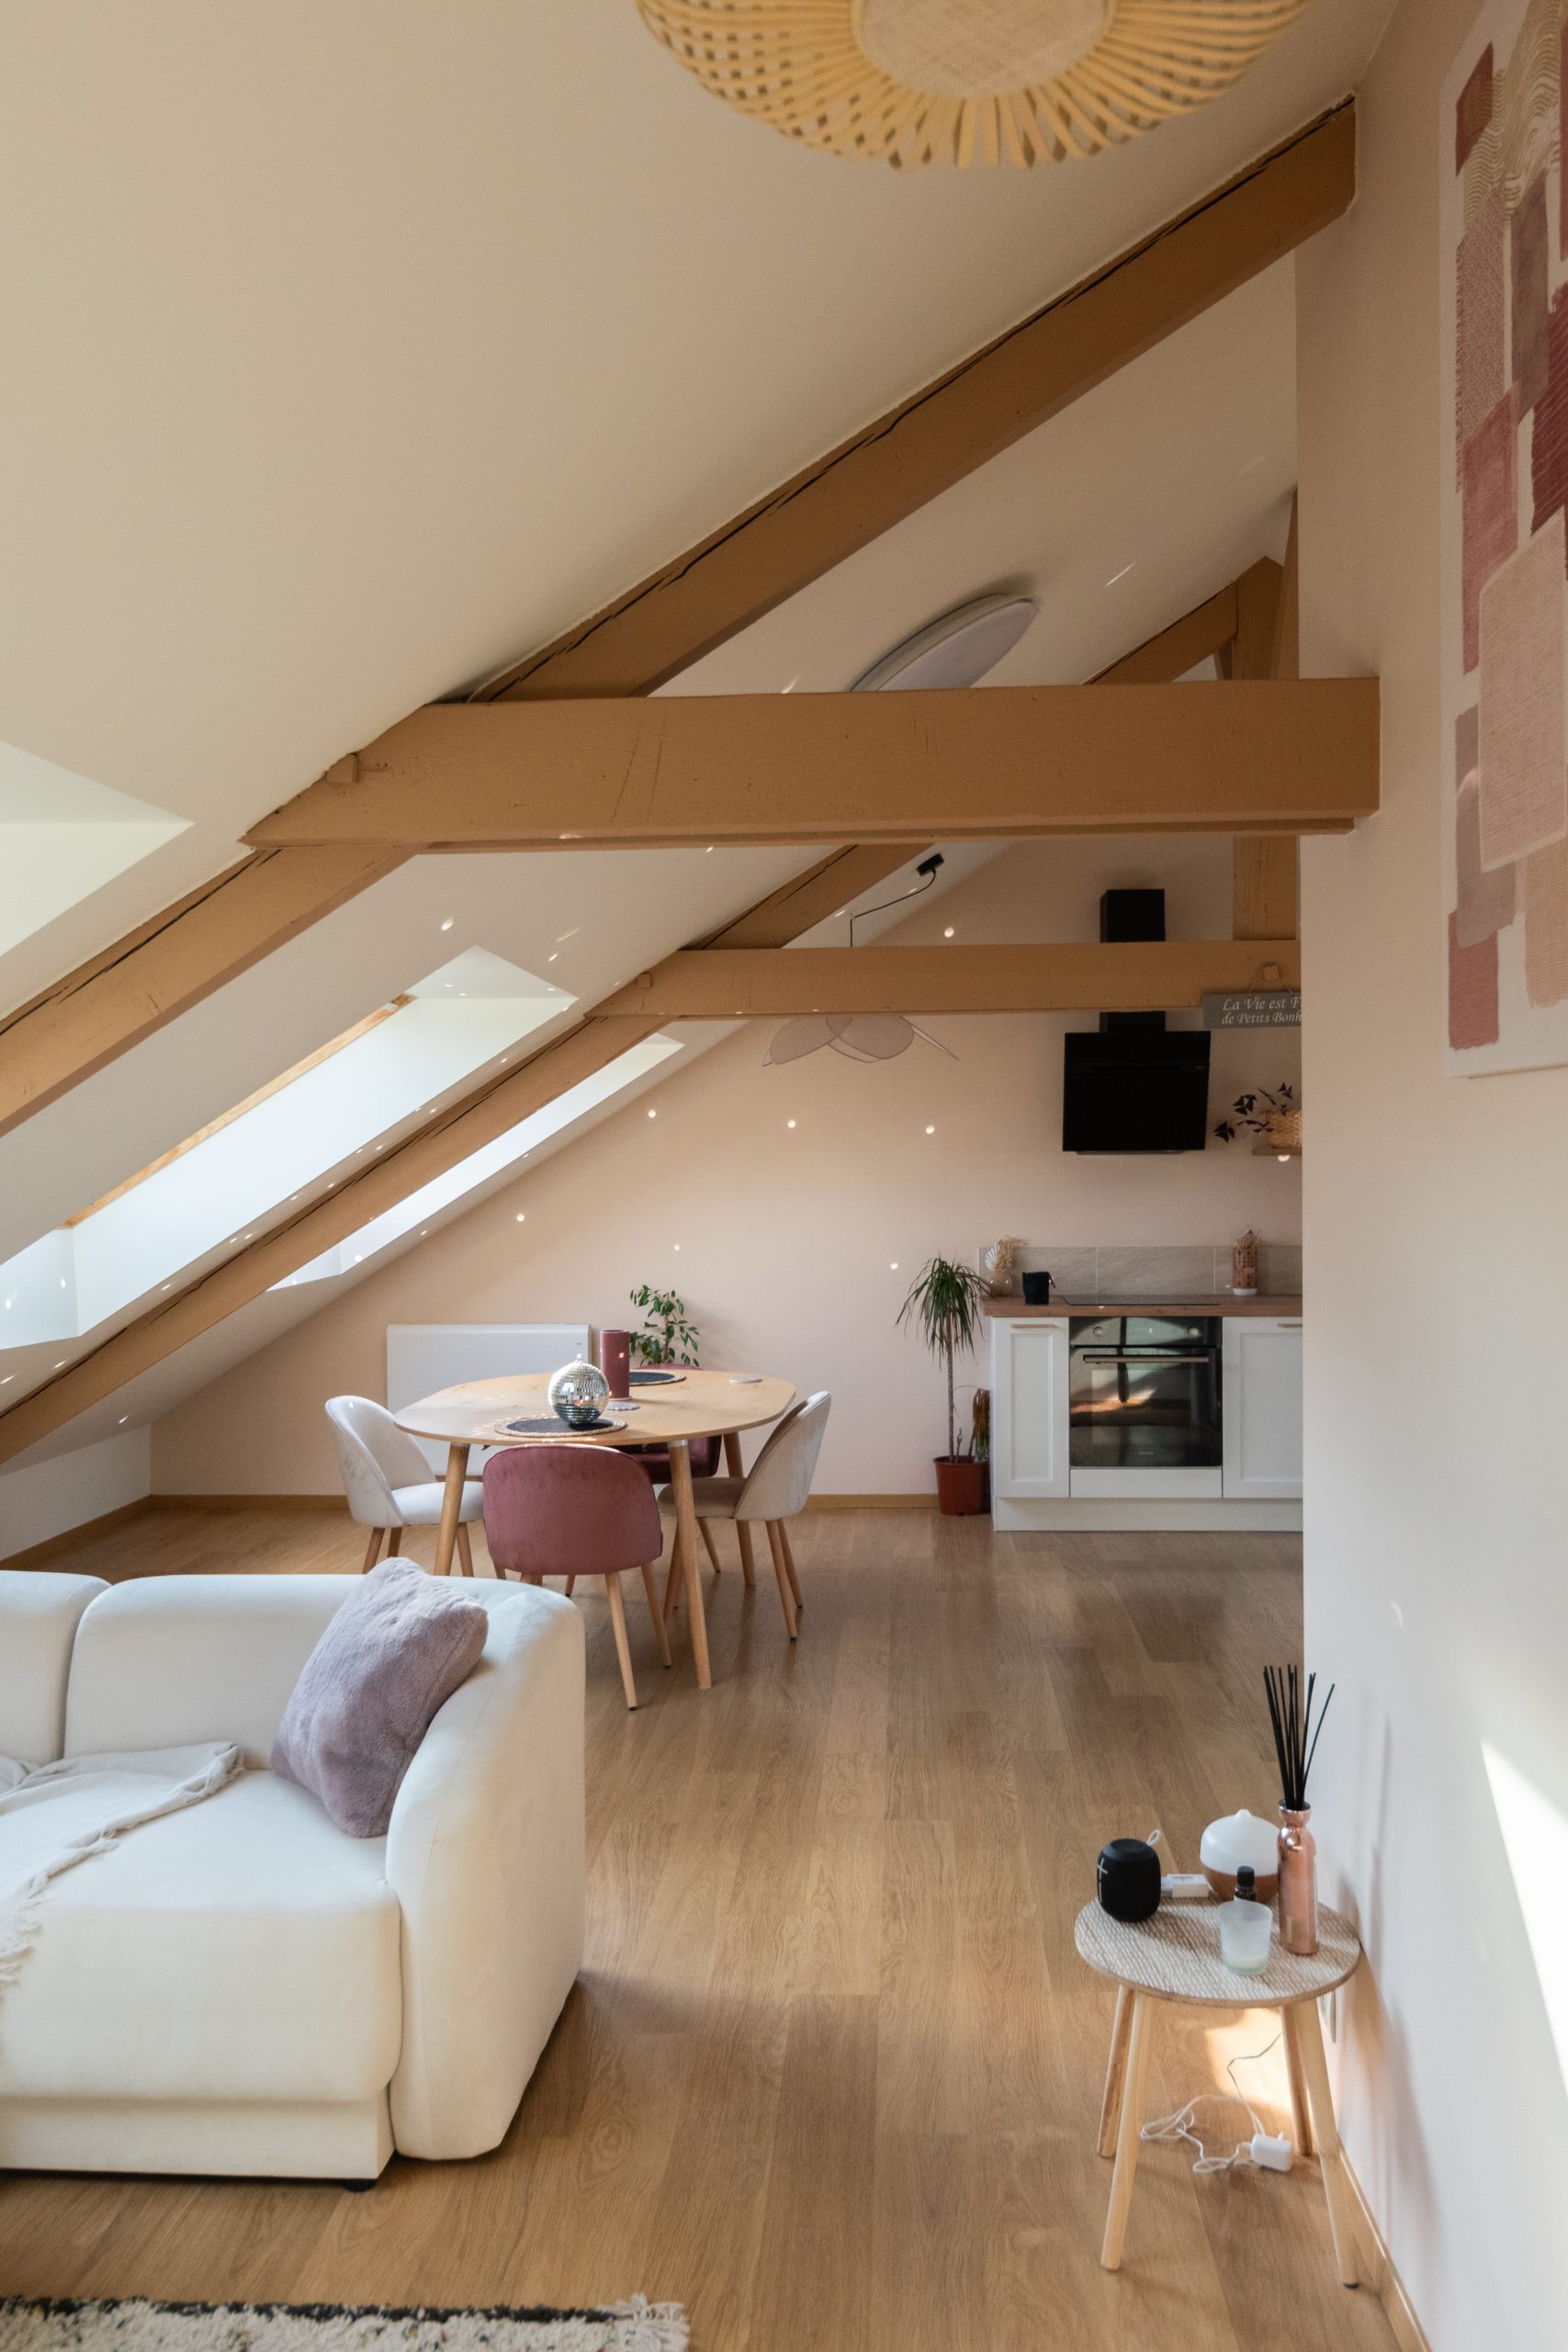 Après travaux - Rénovation d'un appartement sous les toits - Bâtiment ancien - Rennes - Le projet d'Imane